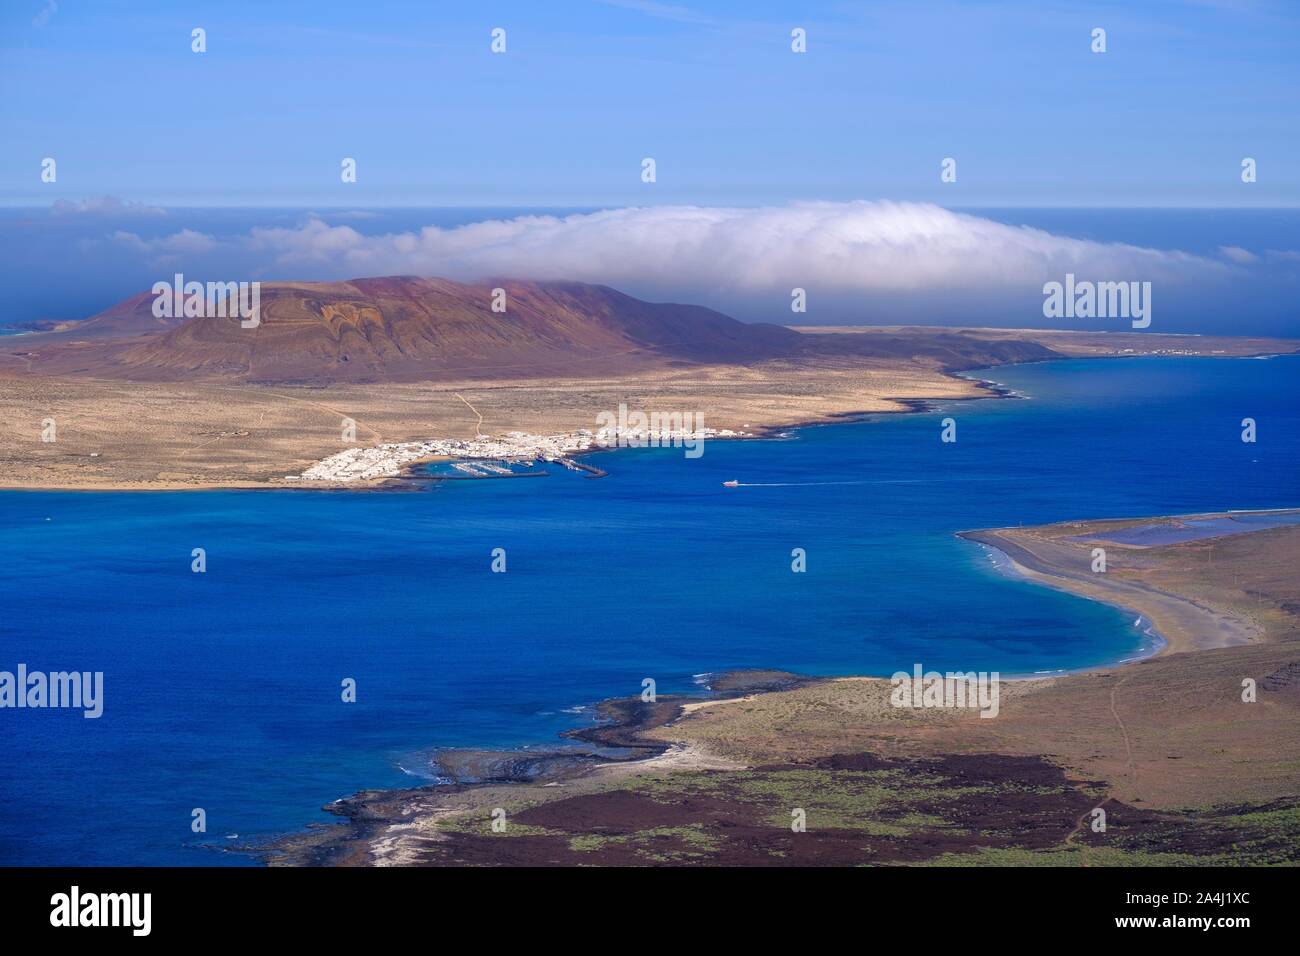 Place Caleta del Sebo on La Graciosa Island, View from Risco de Famara, Lanzarote, Canary Islands, Spain Stock Photo